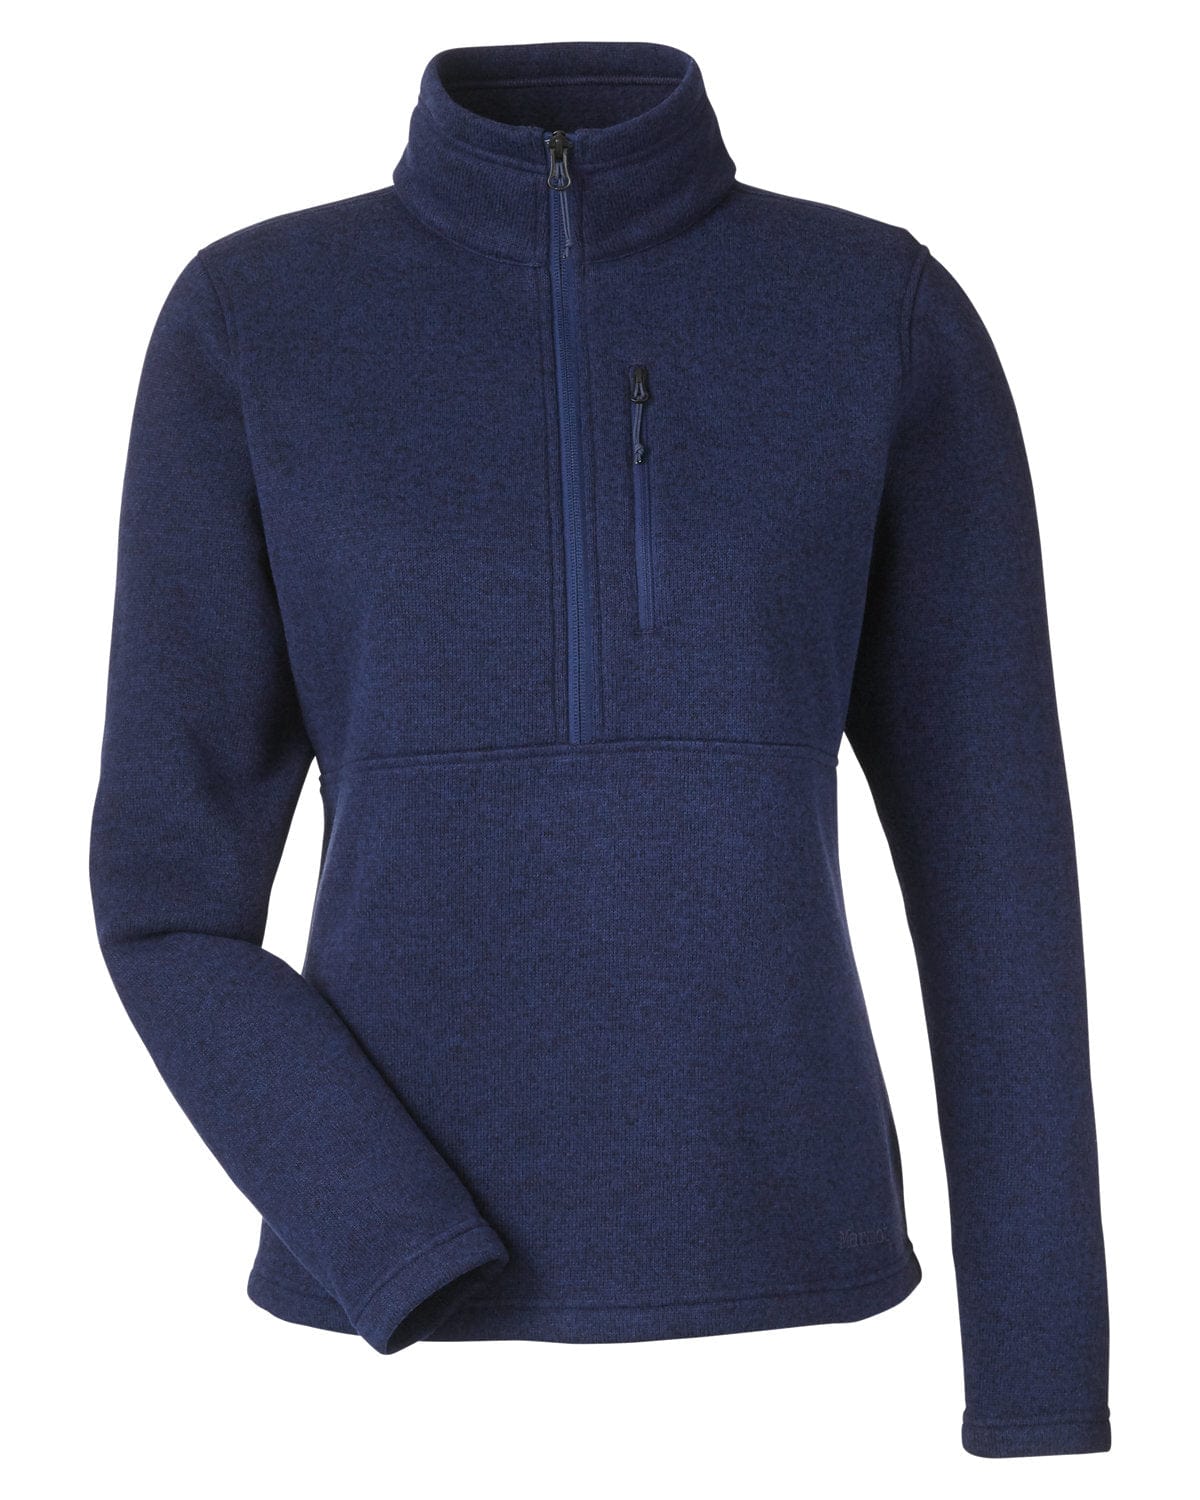 Marmot Outerwear XS / Arctic Navy Marmot - Women's Dropline Half-Zip Sweater Fleece Jacket